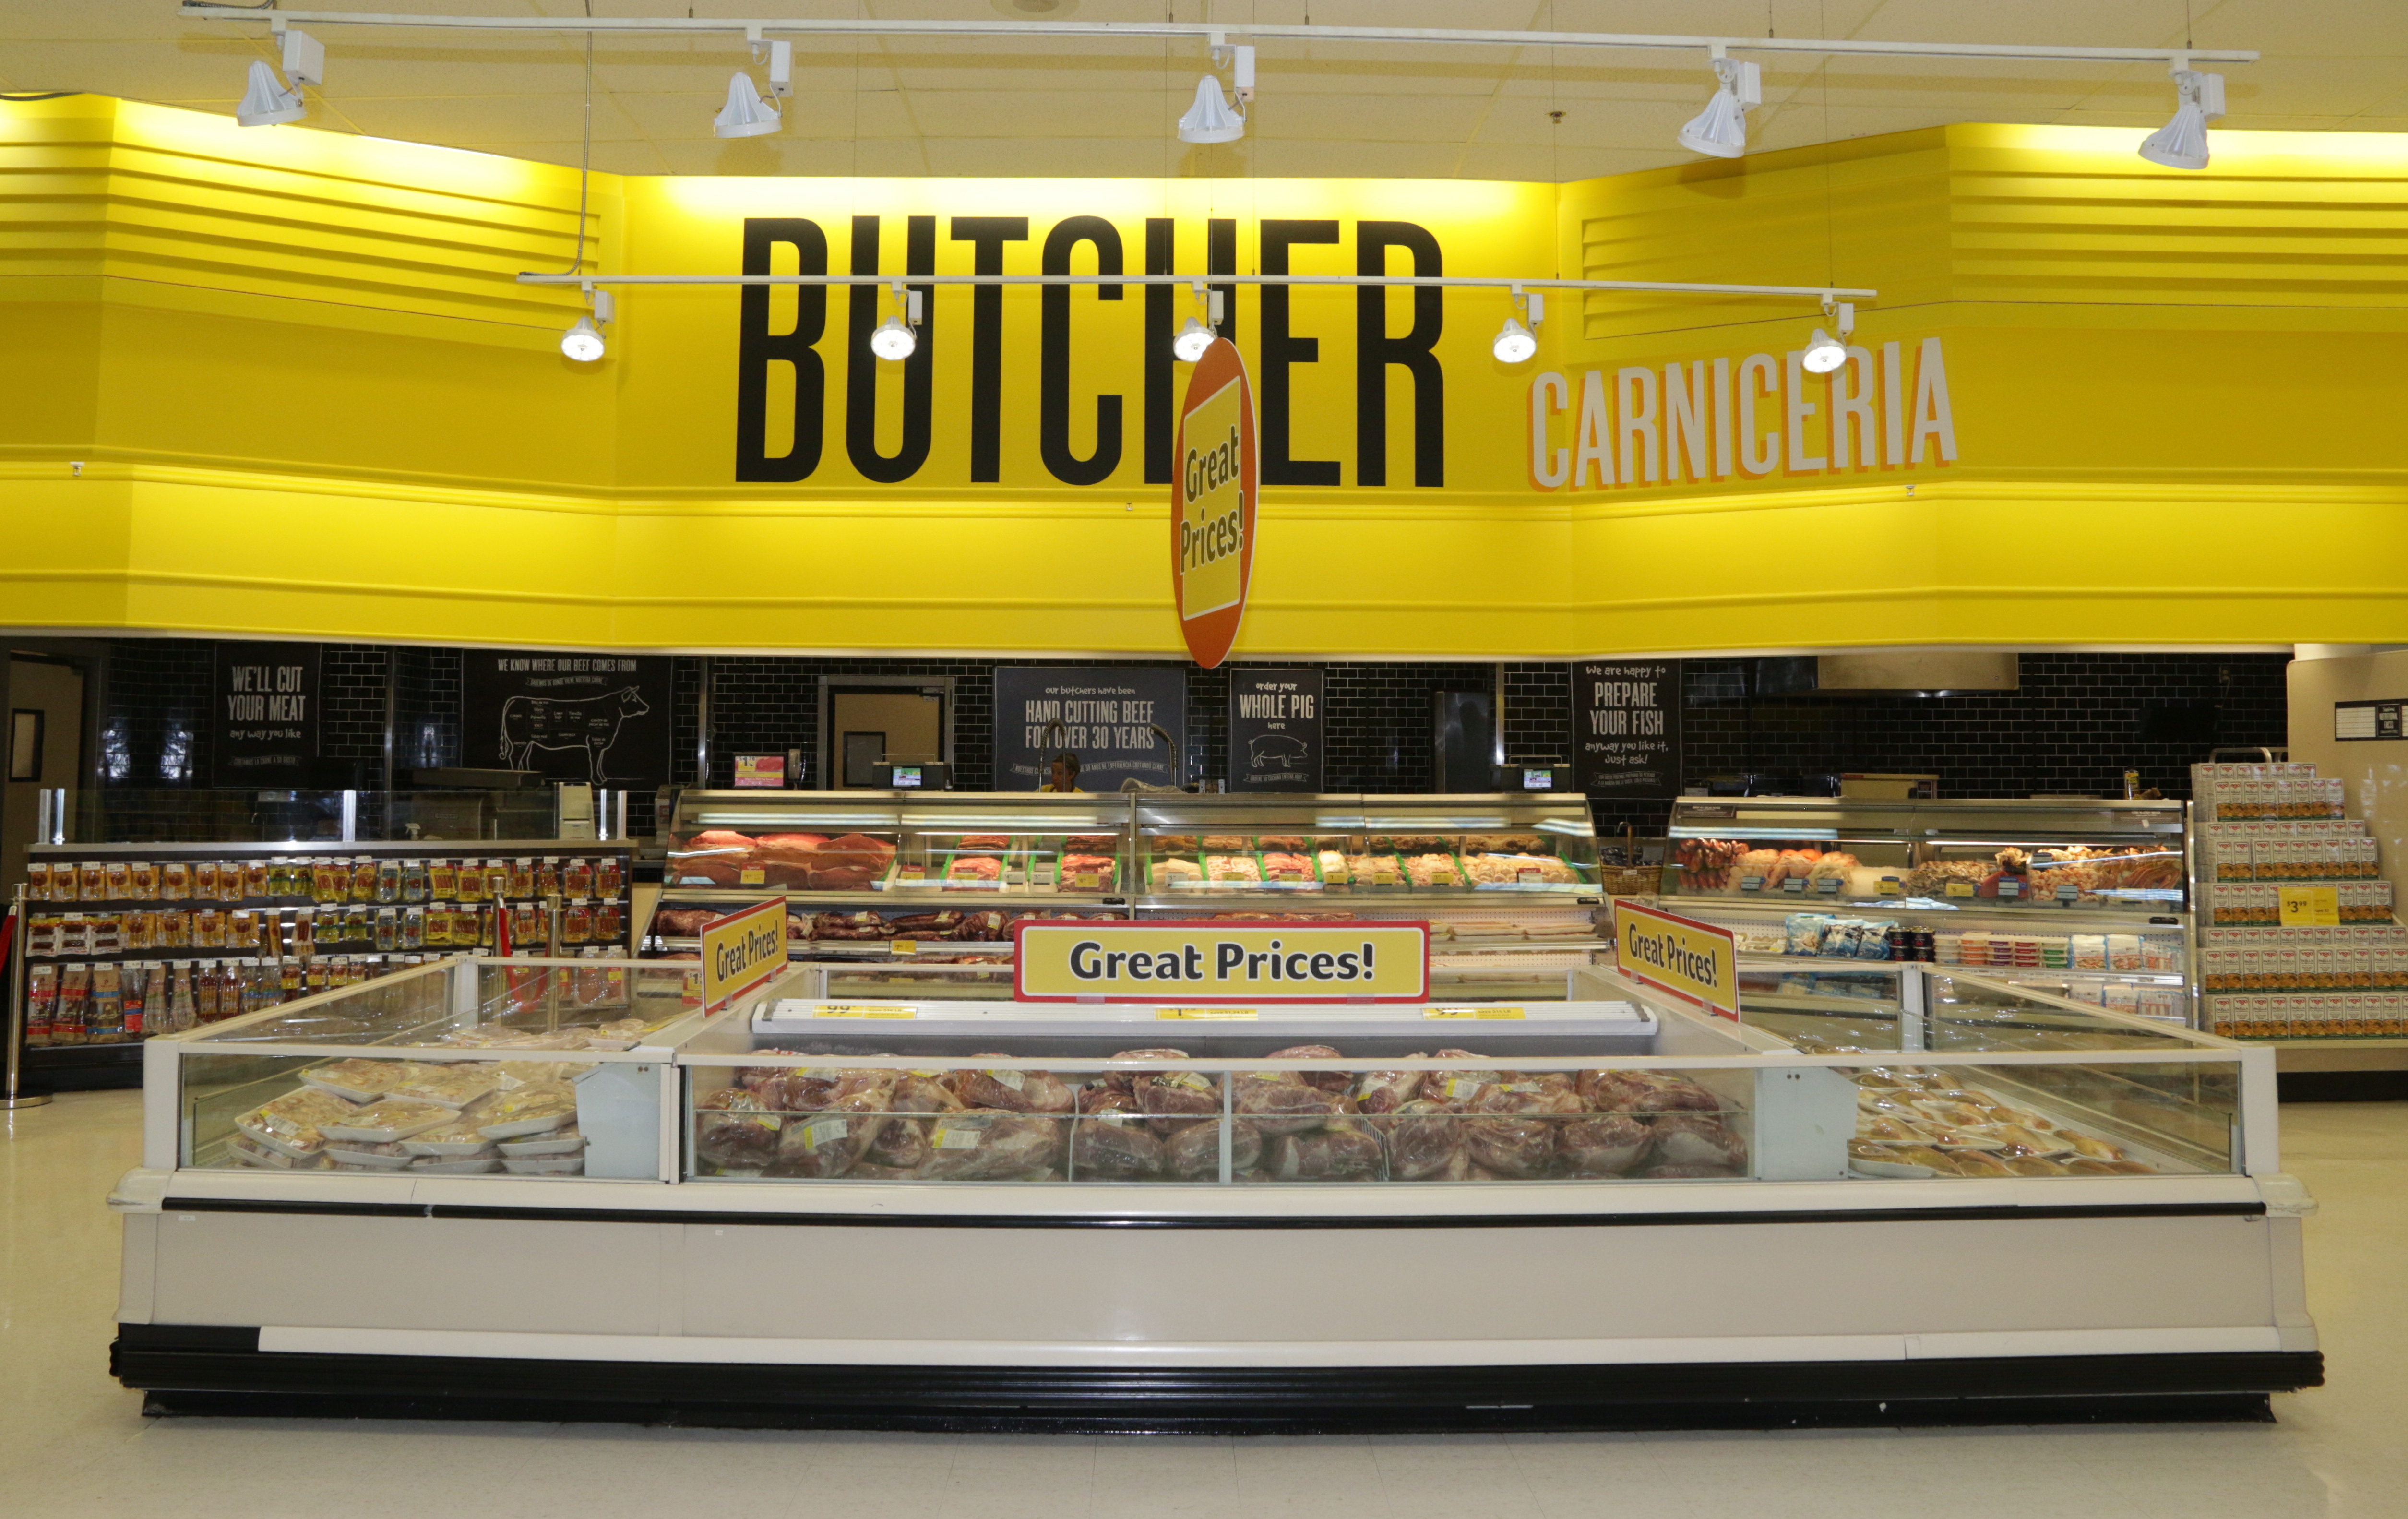 Fresh  El moderno supermercado digital en EEUU - 800Noticias